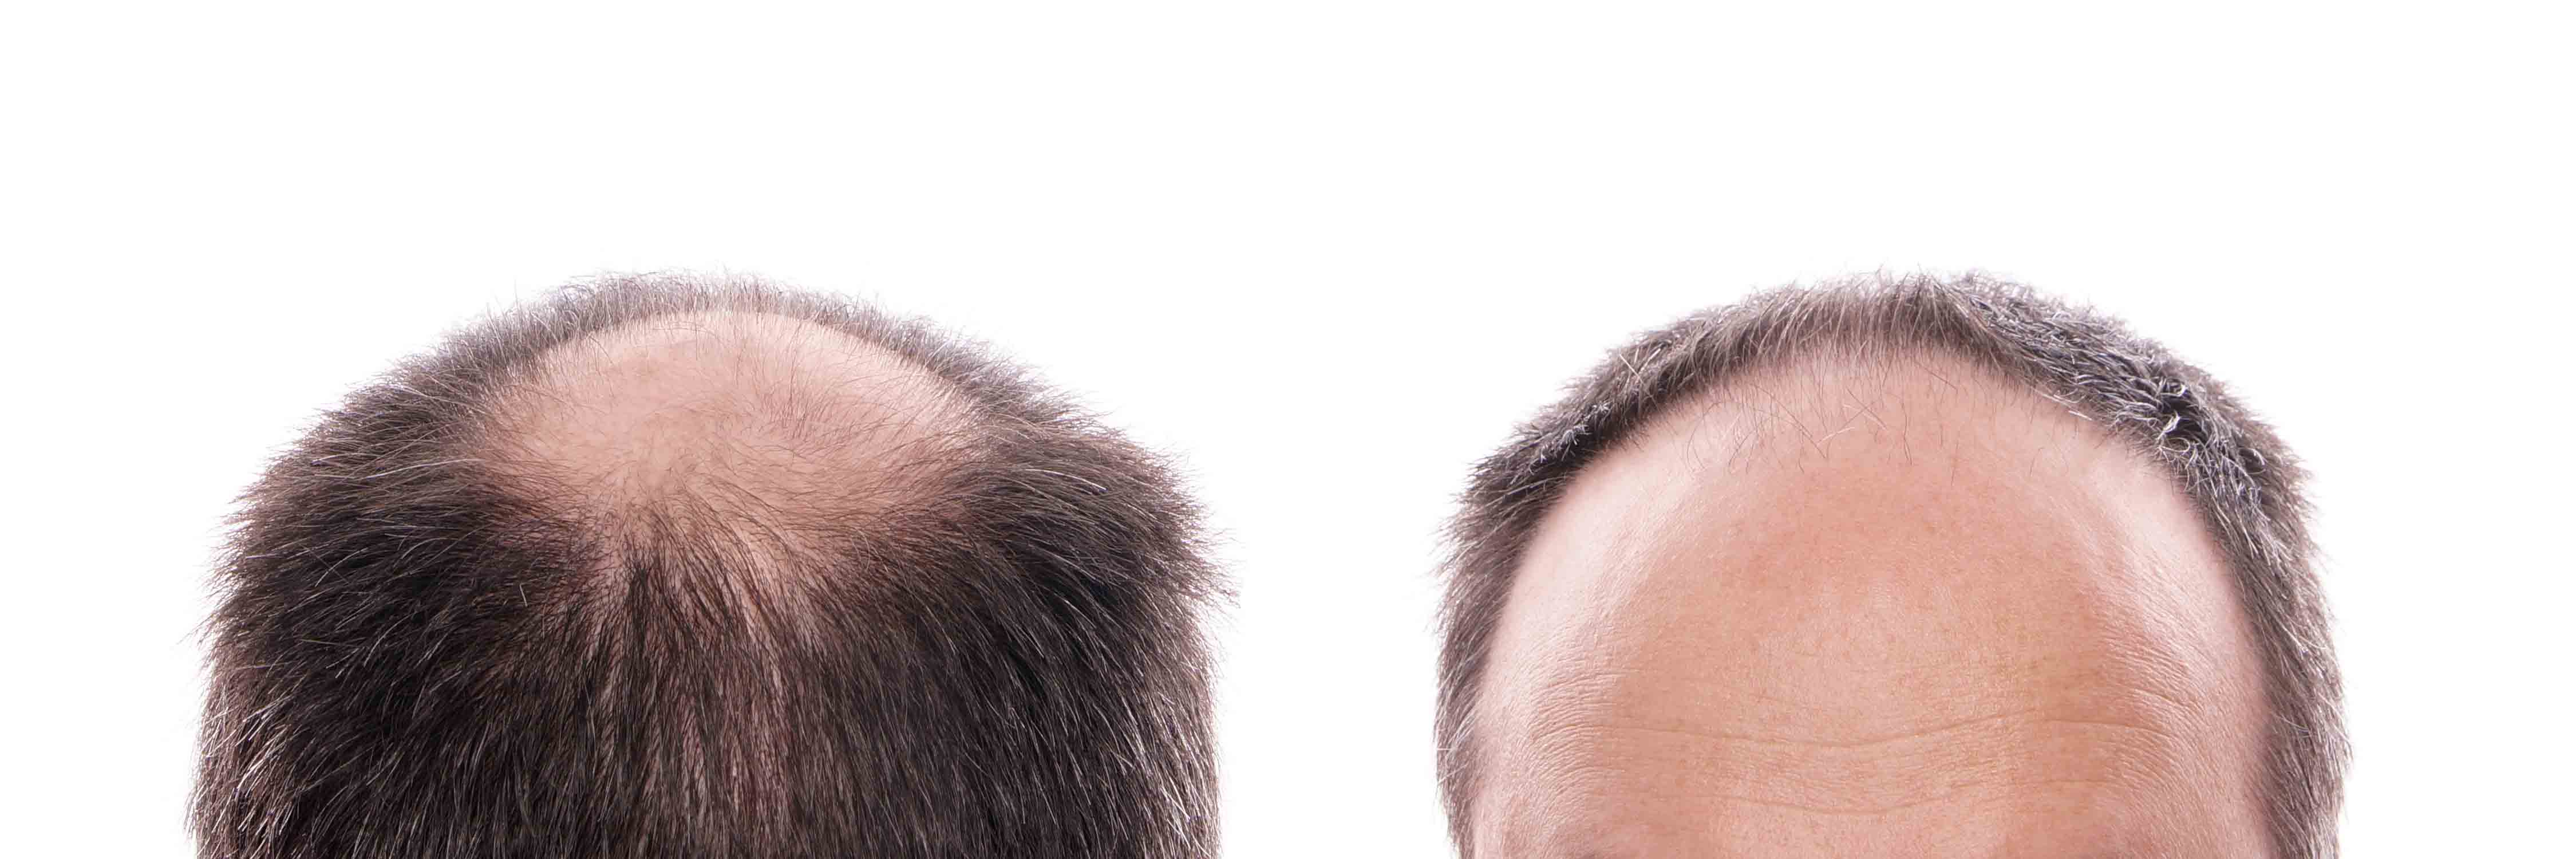 ¿Una quemadura solar en el cuero cabelludo, puede producir alopecia?